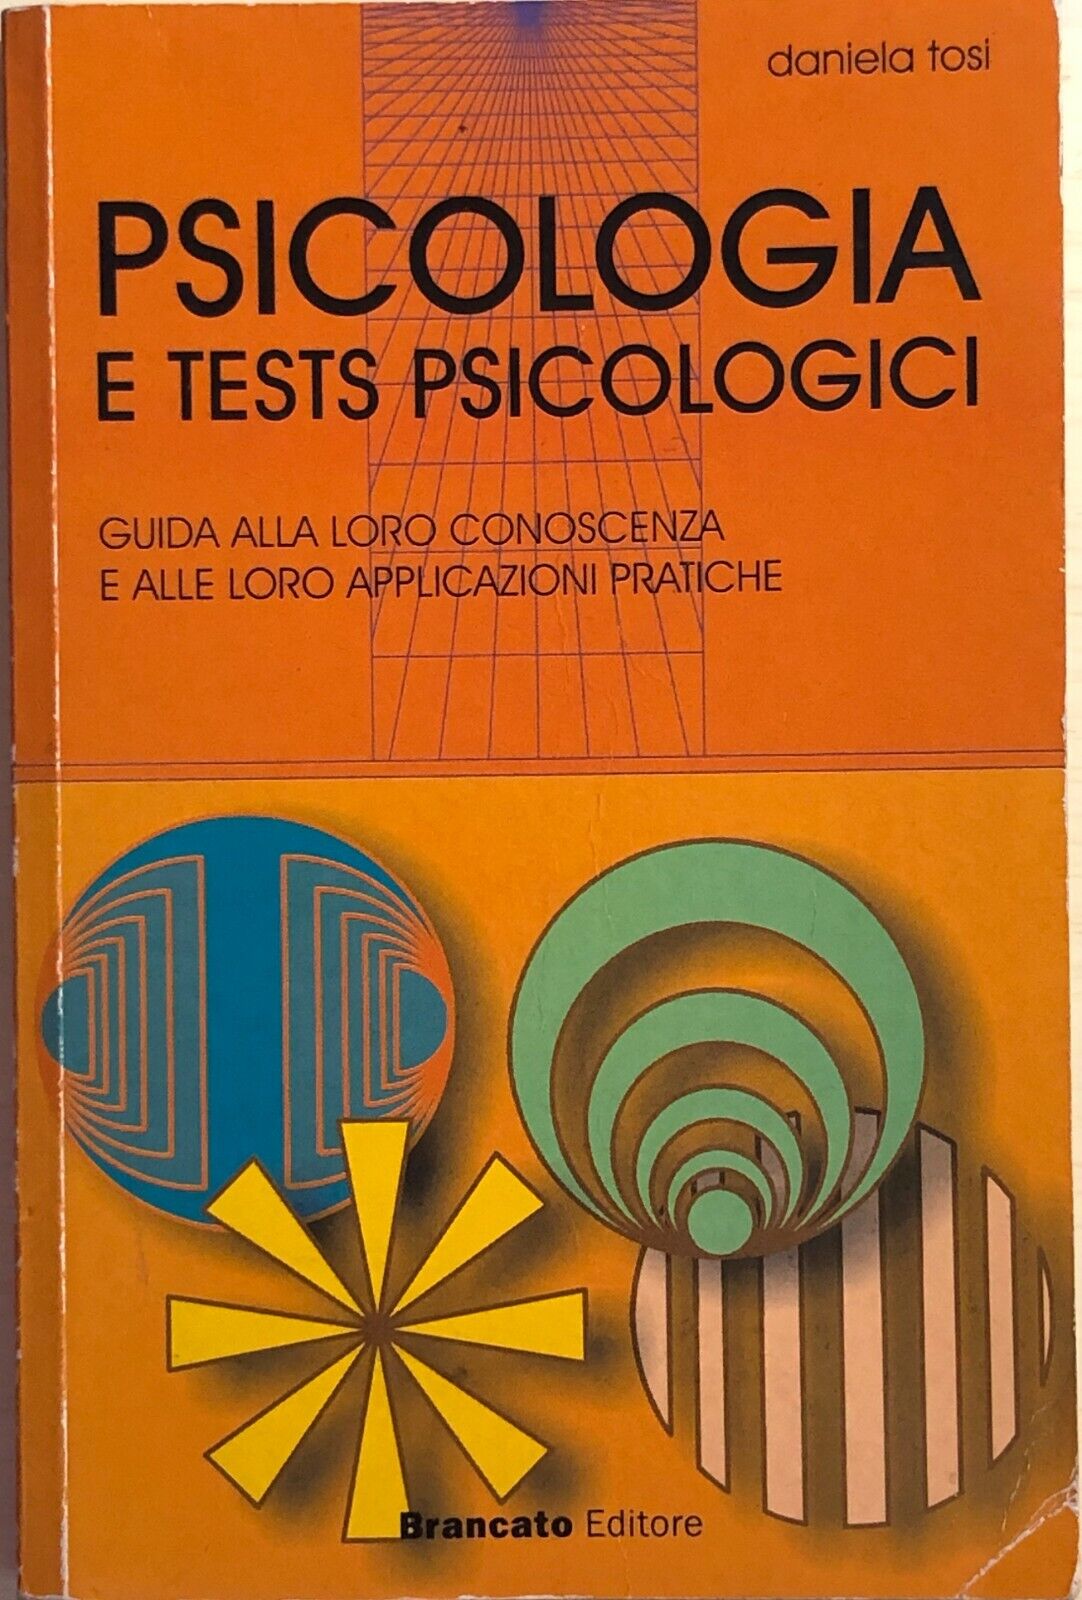 Psicologia e tests psicologici di Daniela Tosi, 2002, Brancato Editore